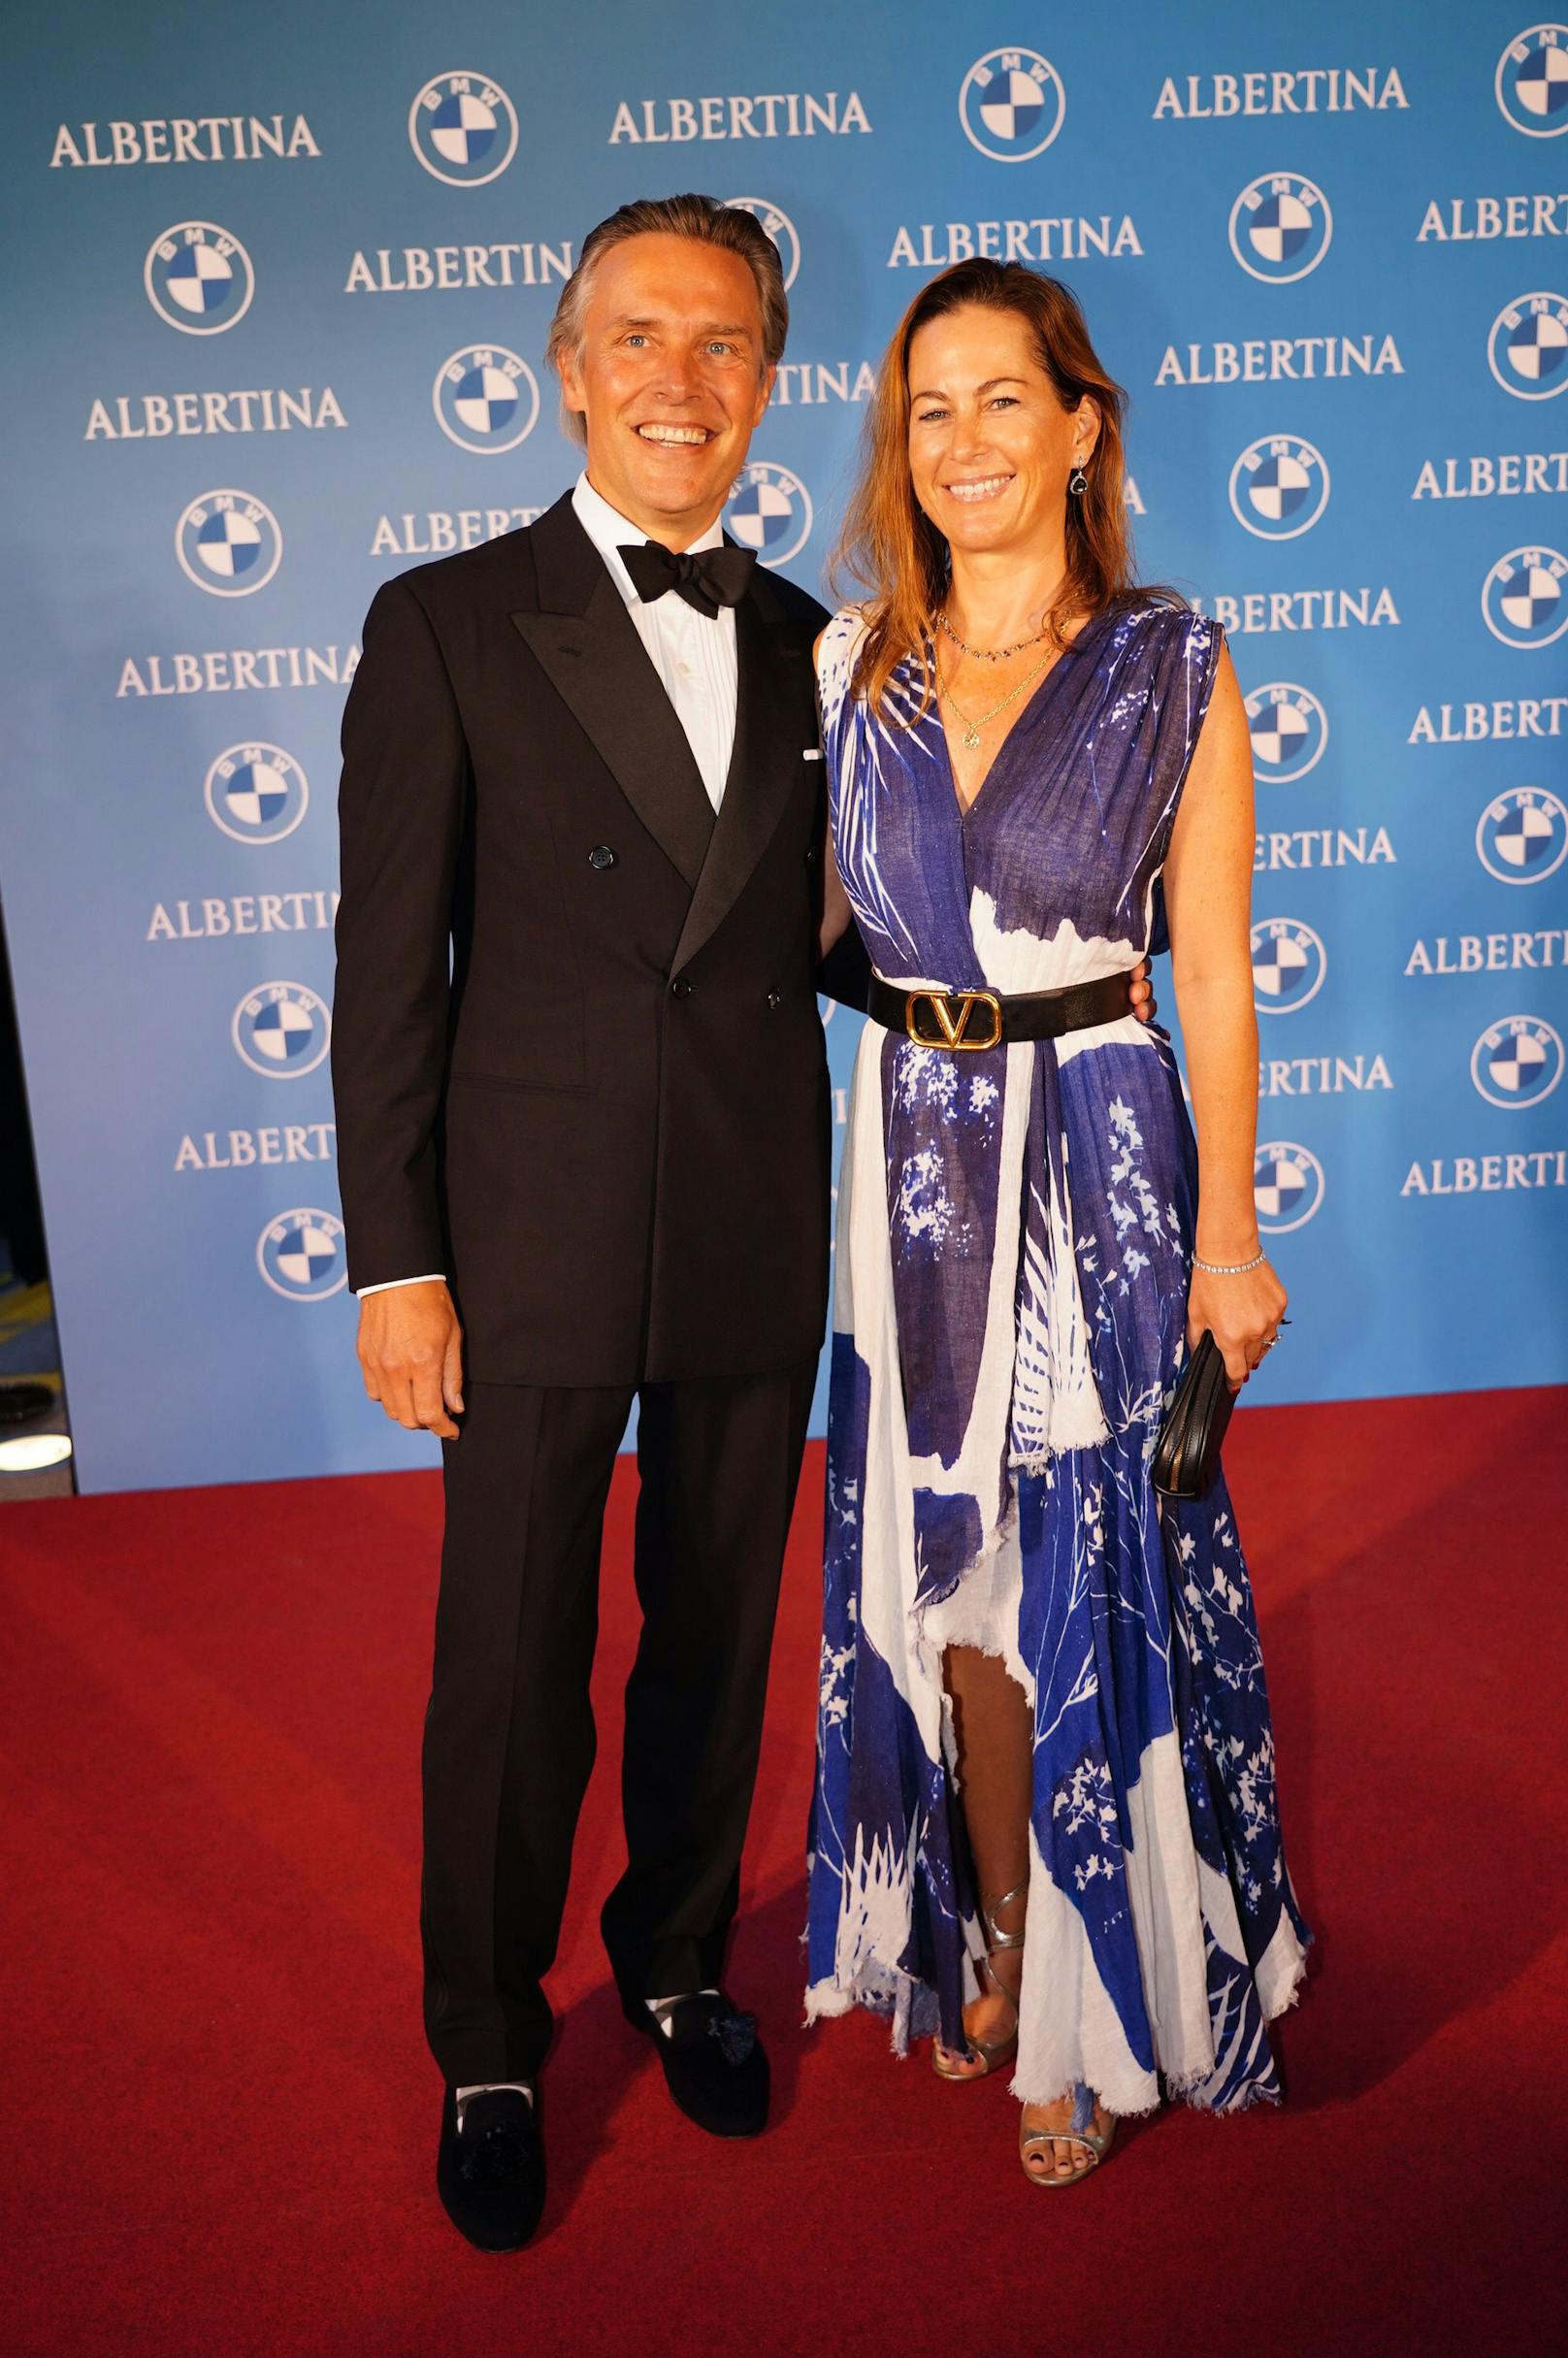 Birgit Lauda strahlt mit Freund bei Albertina-Gala